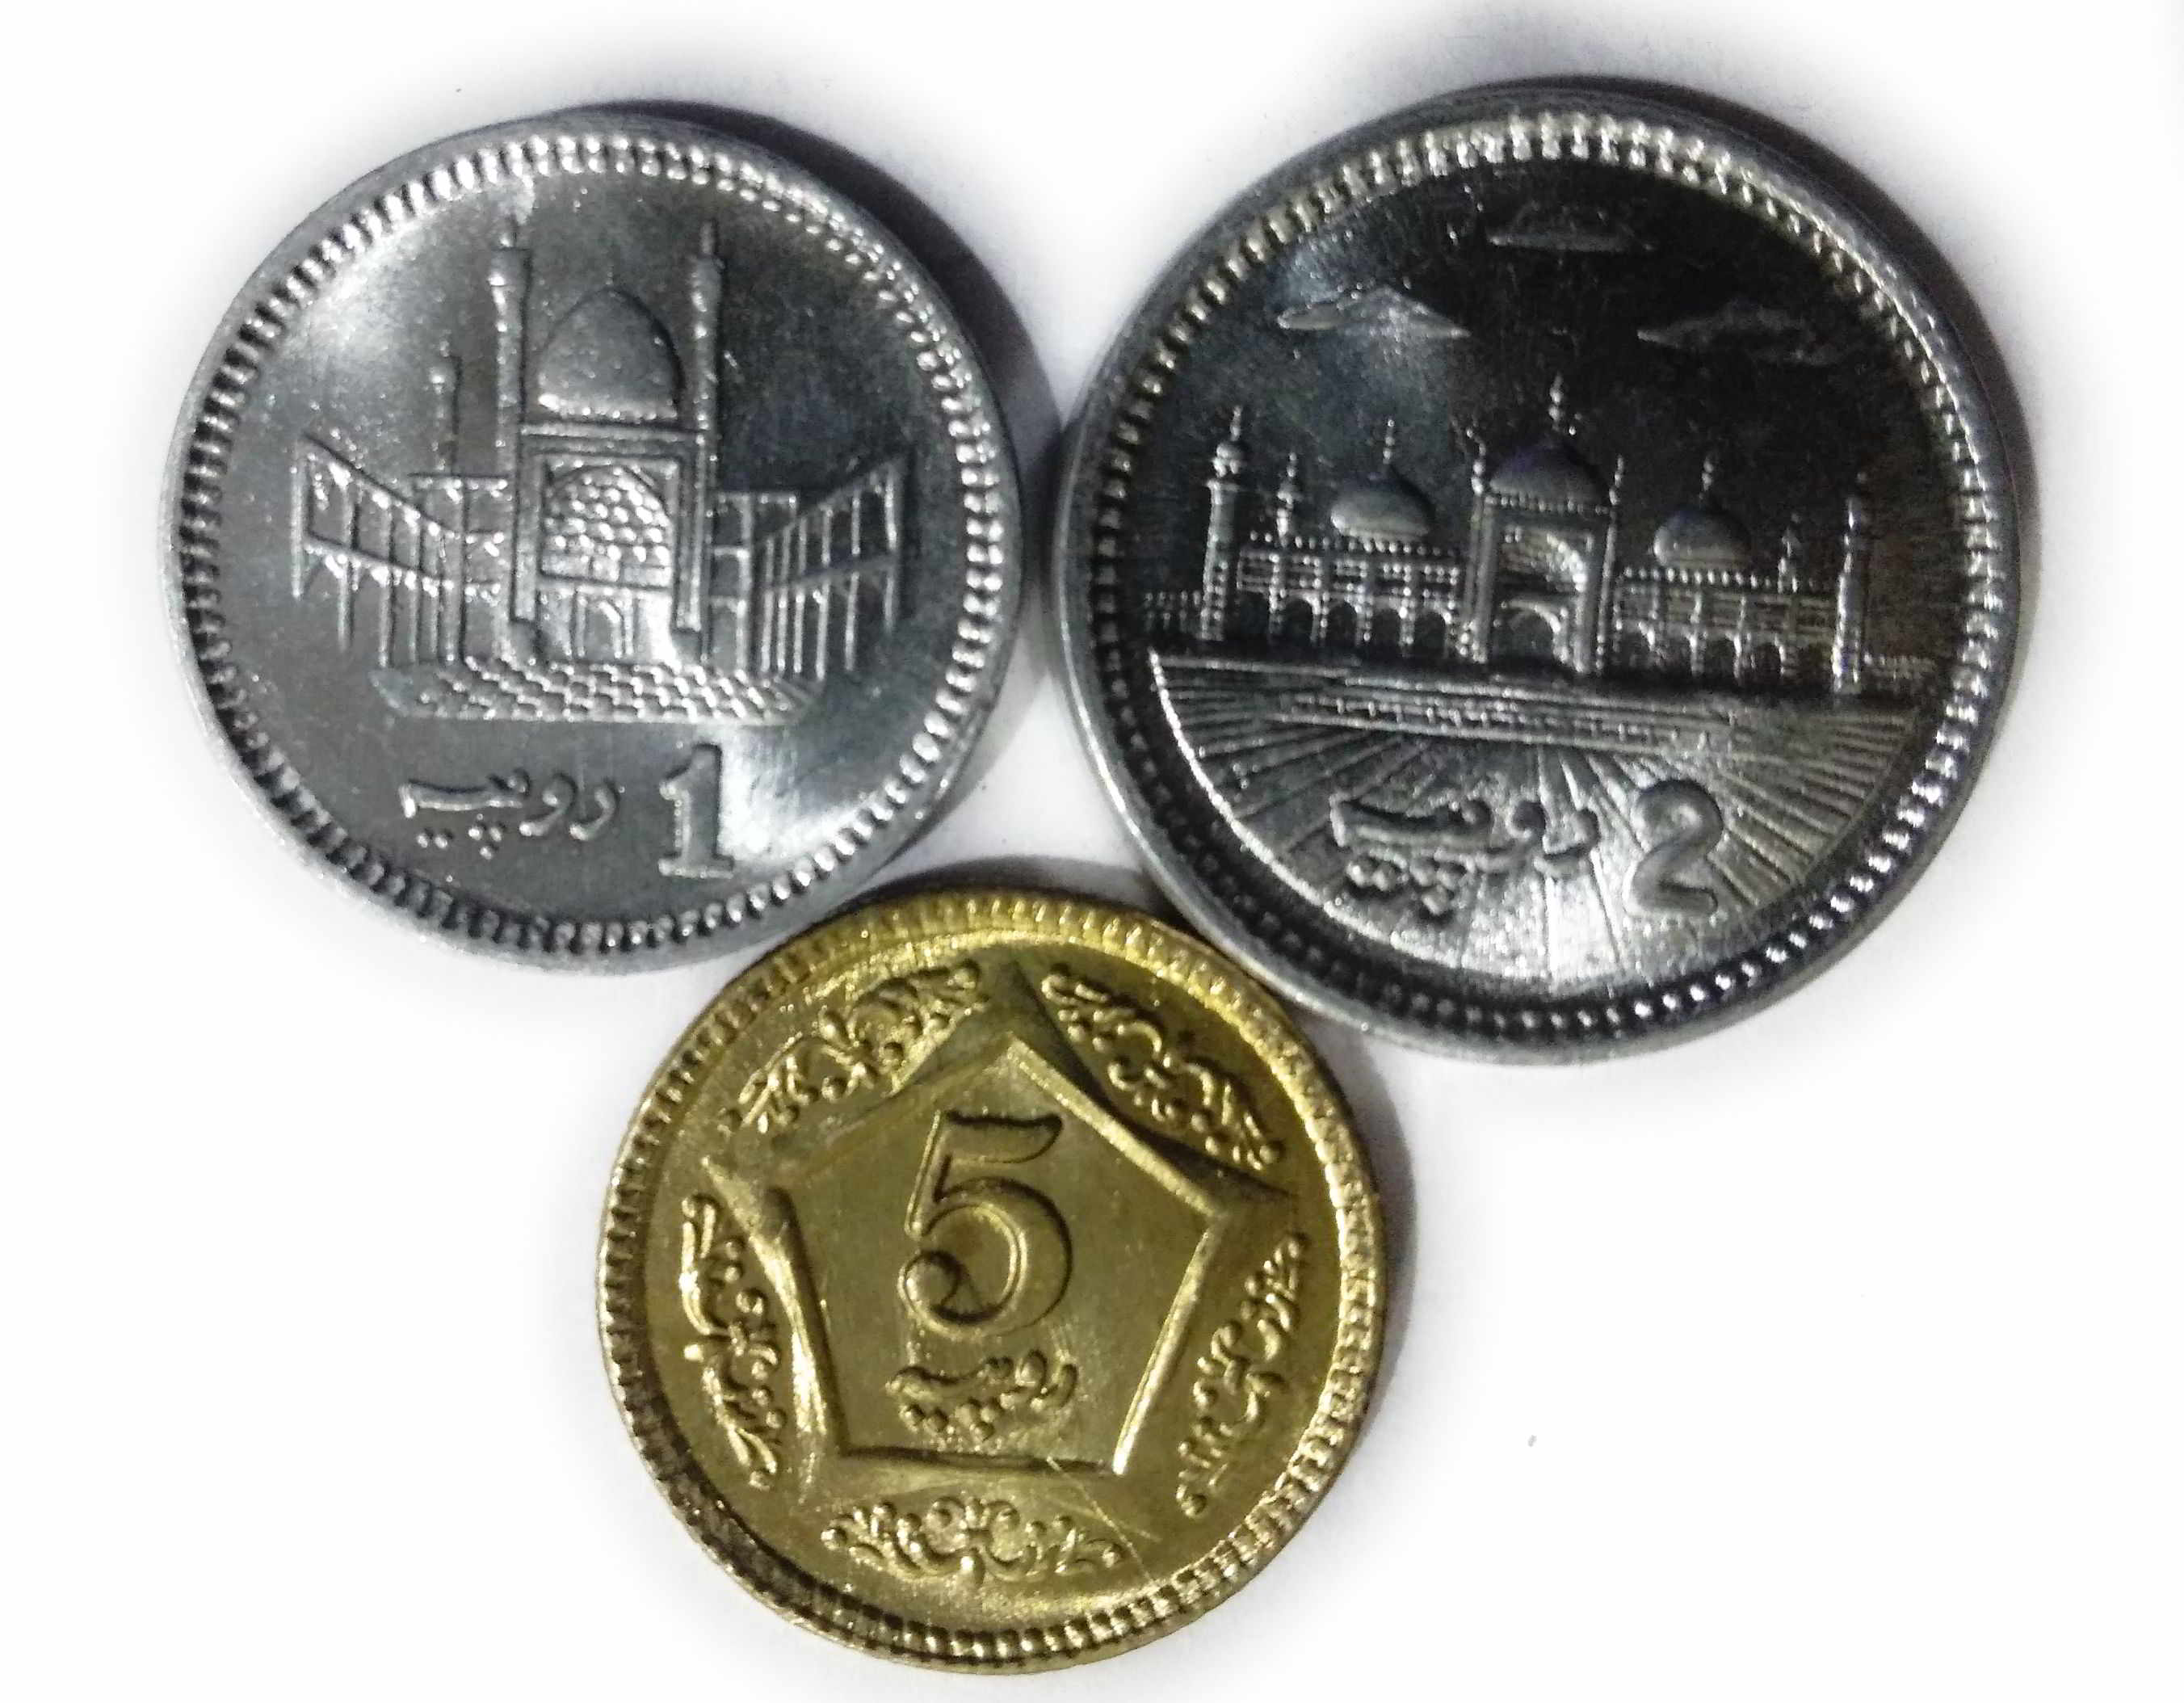 Details about   Pakistan 5 x 3 Pcs Coins Set 15 Pcs UNC, 1 2 5 Rupee 2014 2015 